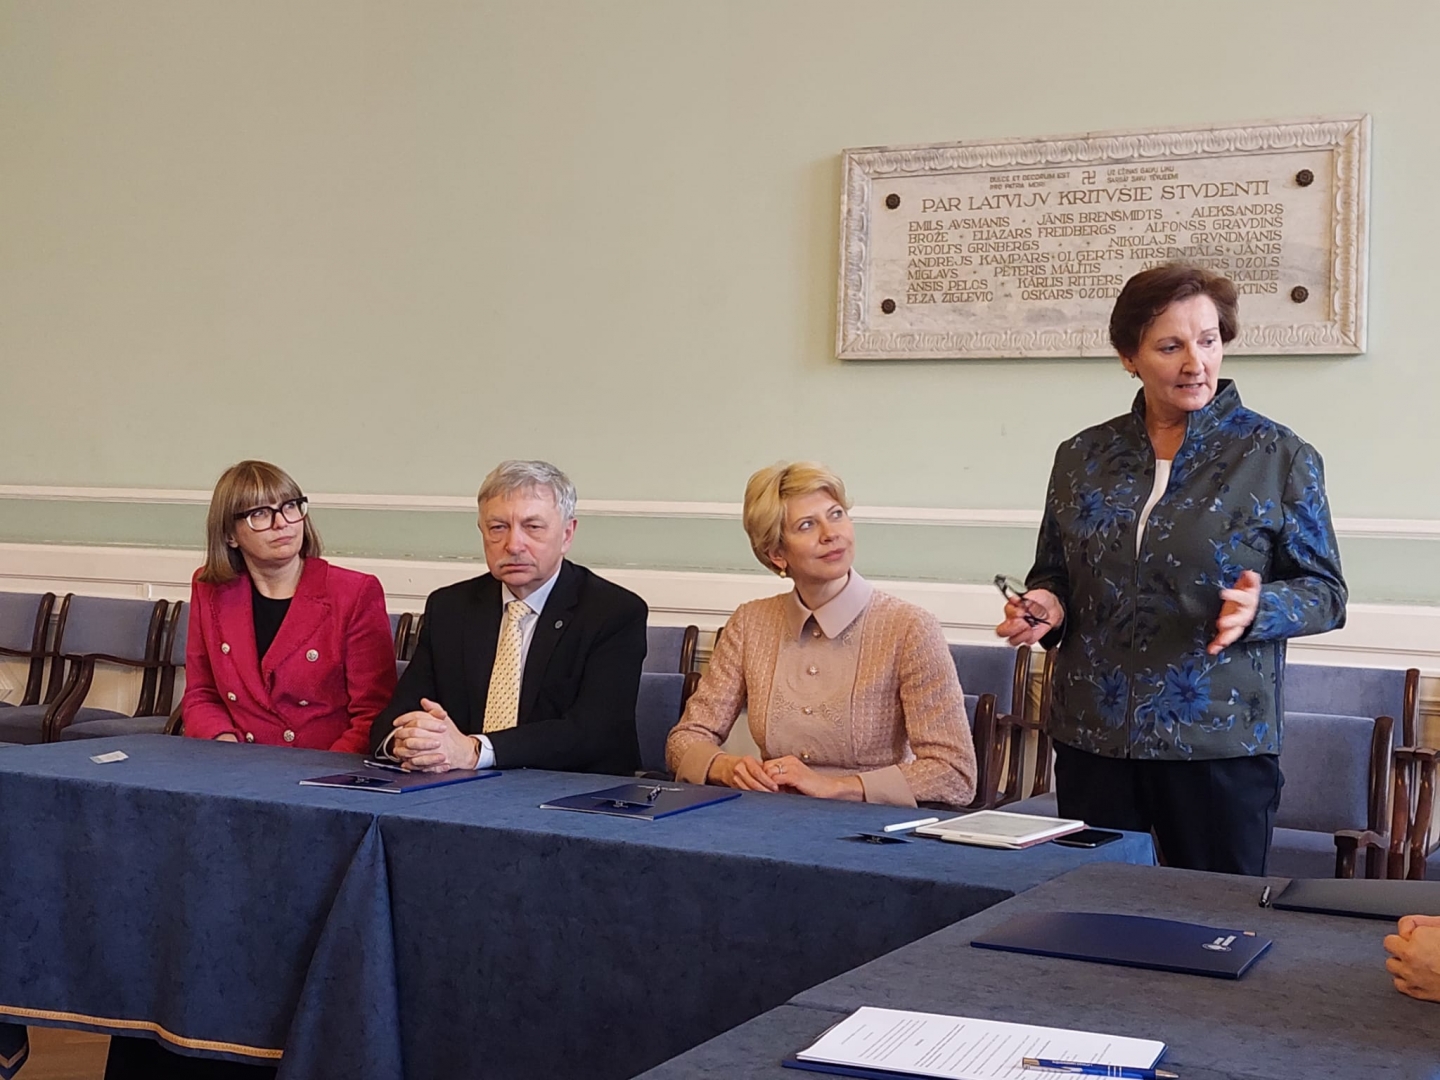 Preiļu novada pašvaldība parakstījusi vienošanos par pedagogu sagatavošanu un profesionālo pilnveidi